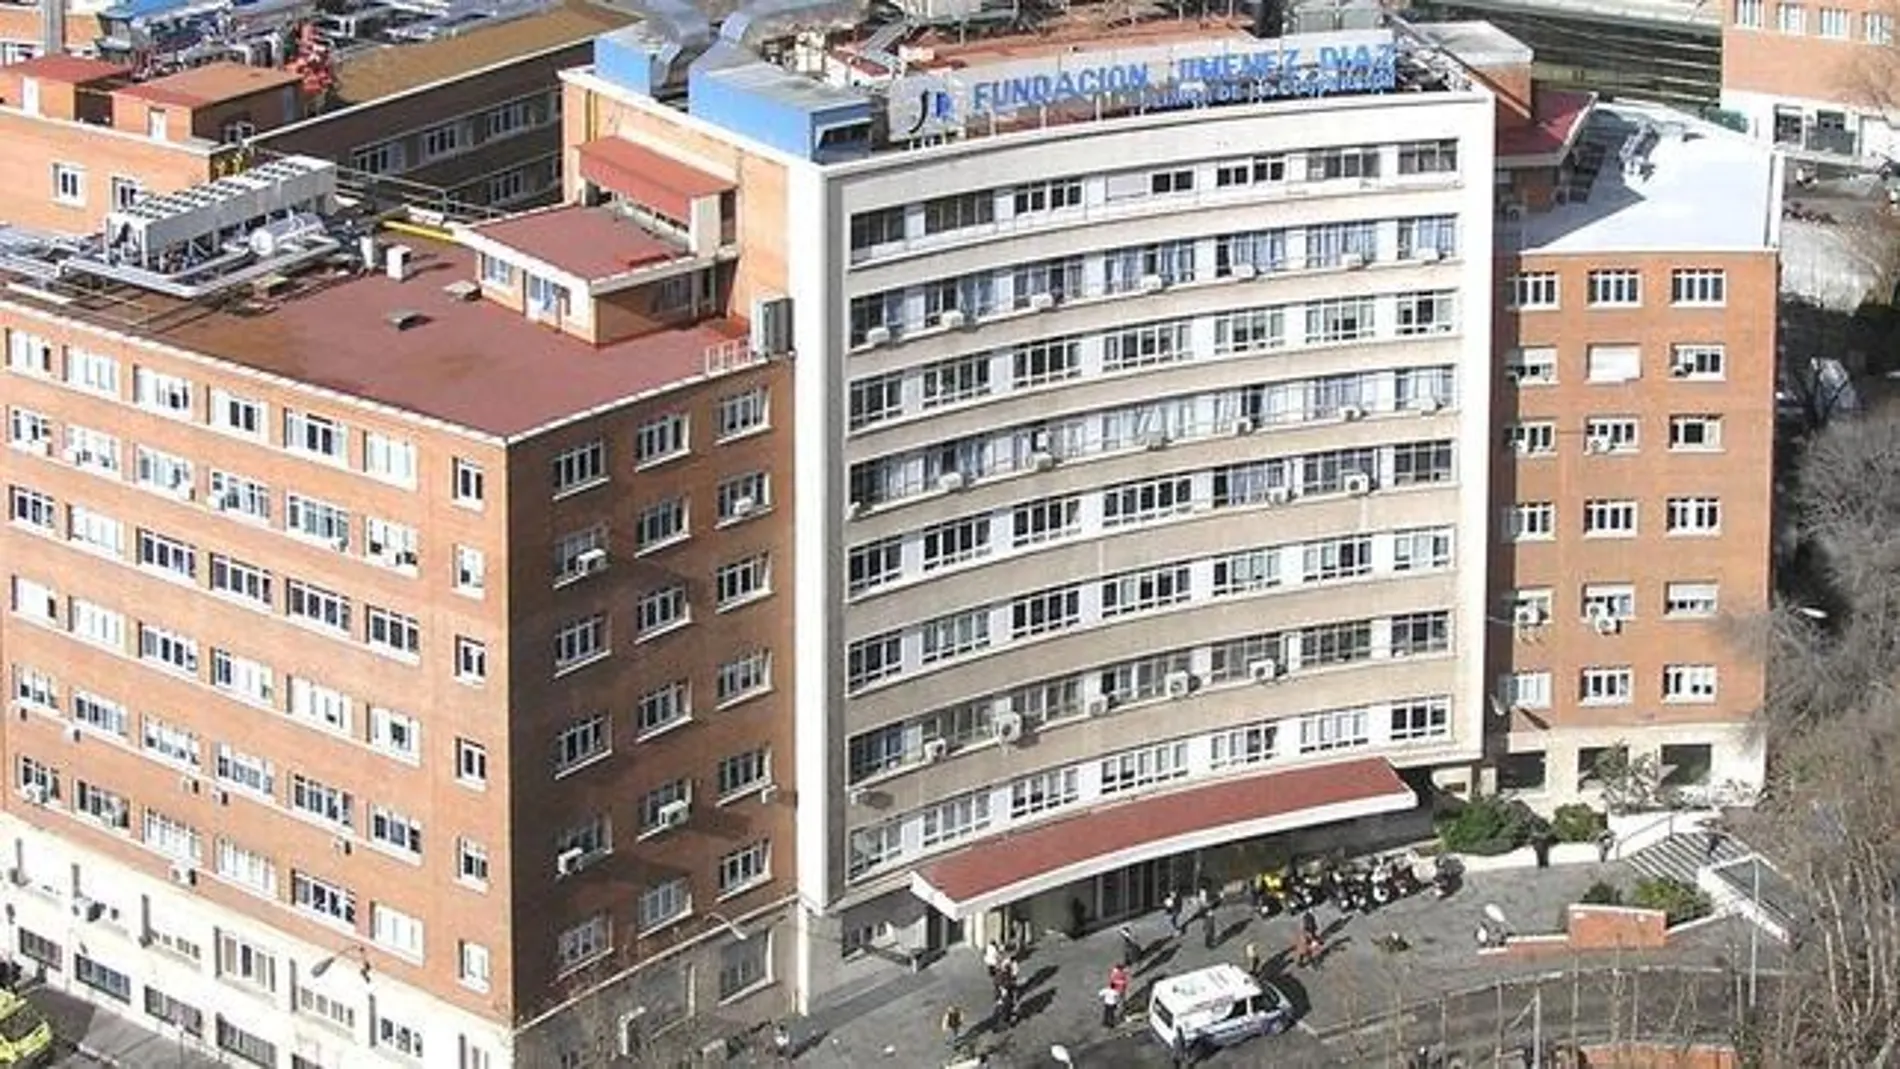 La Fundación Jiménez Díaz, el mejor hospital de España